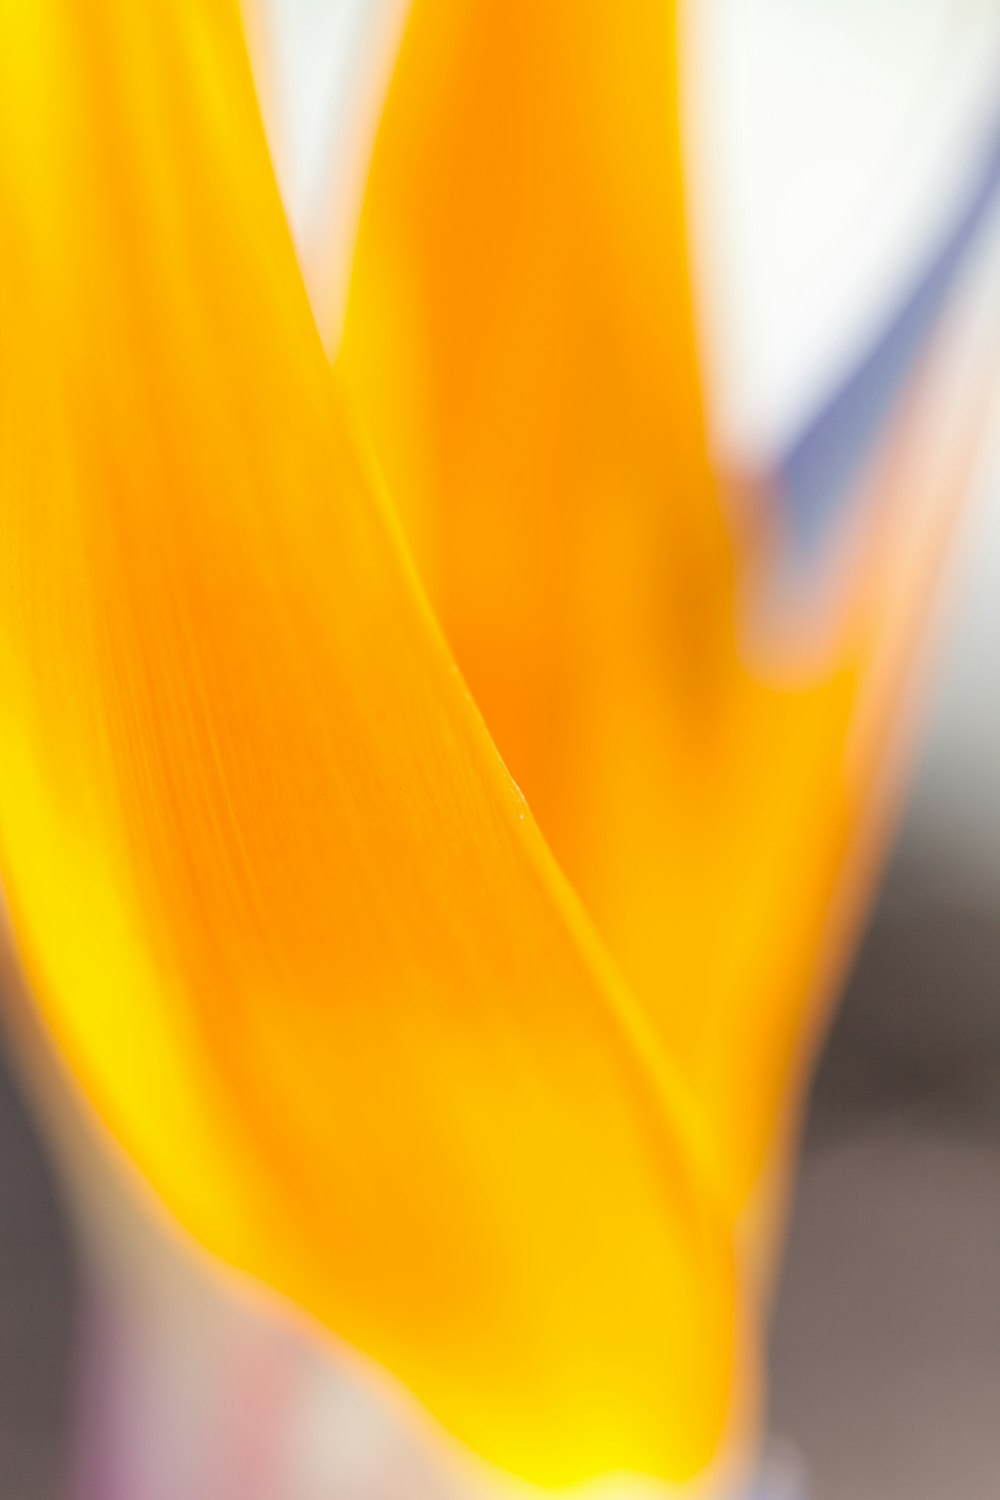 flor amarilla en fotografía de primer plano